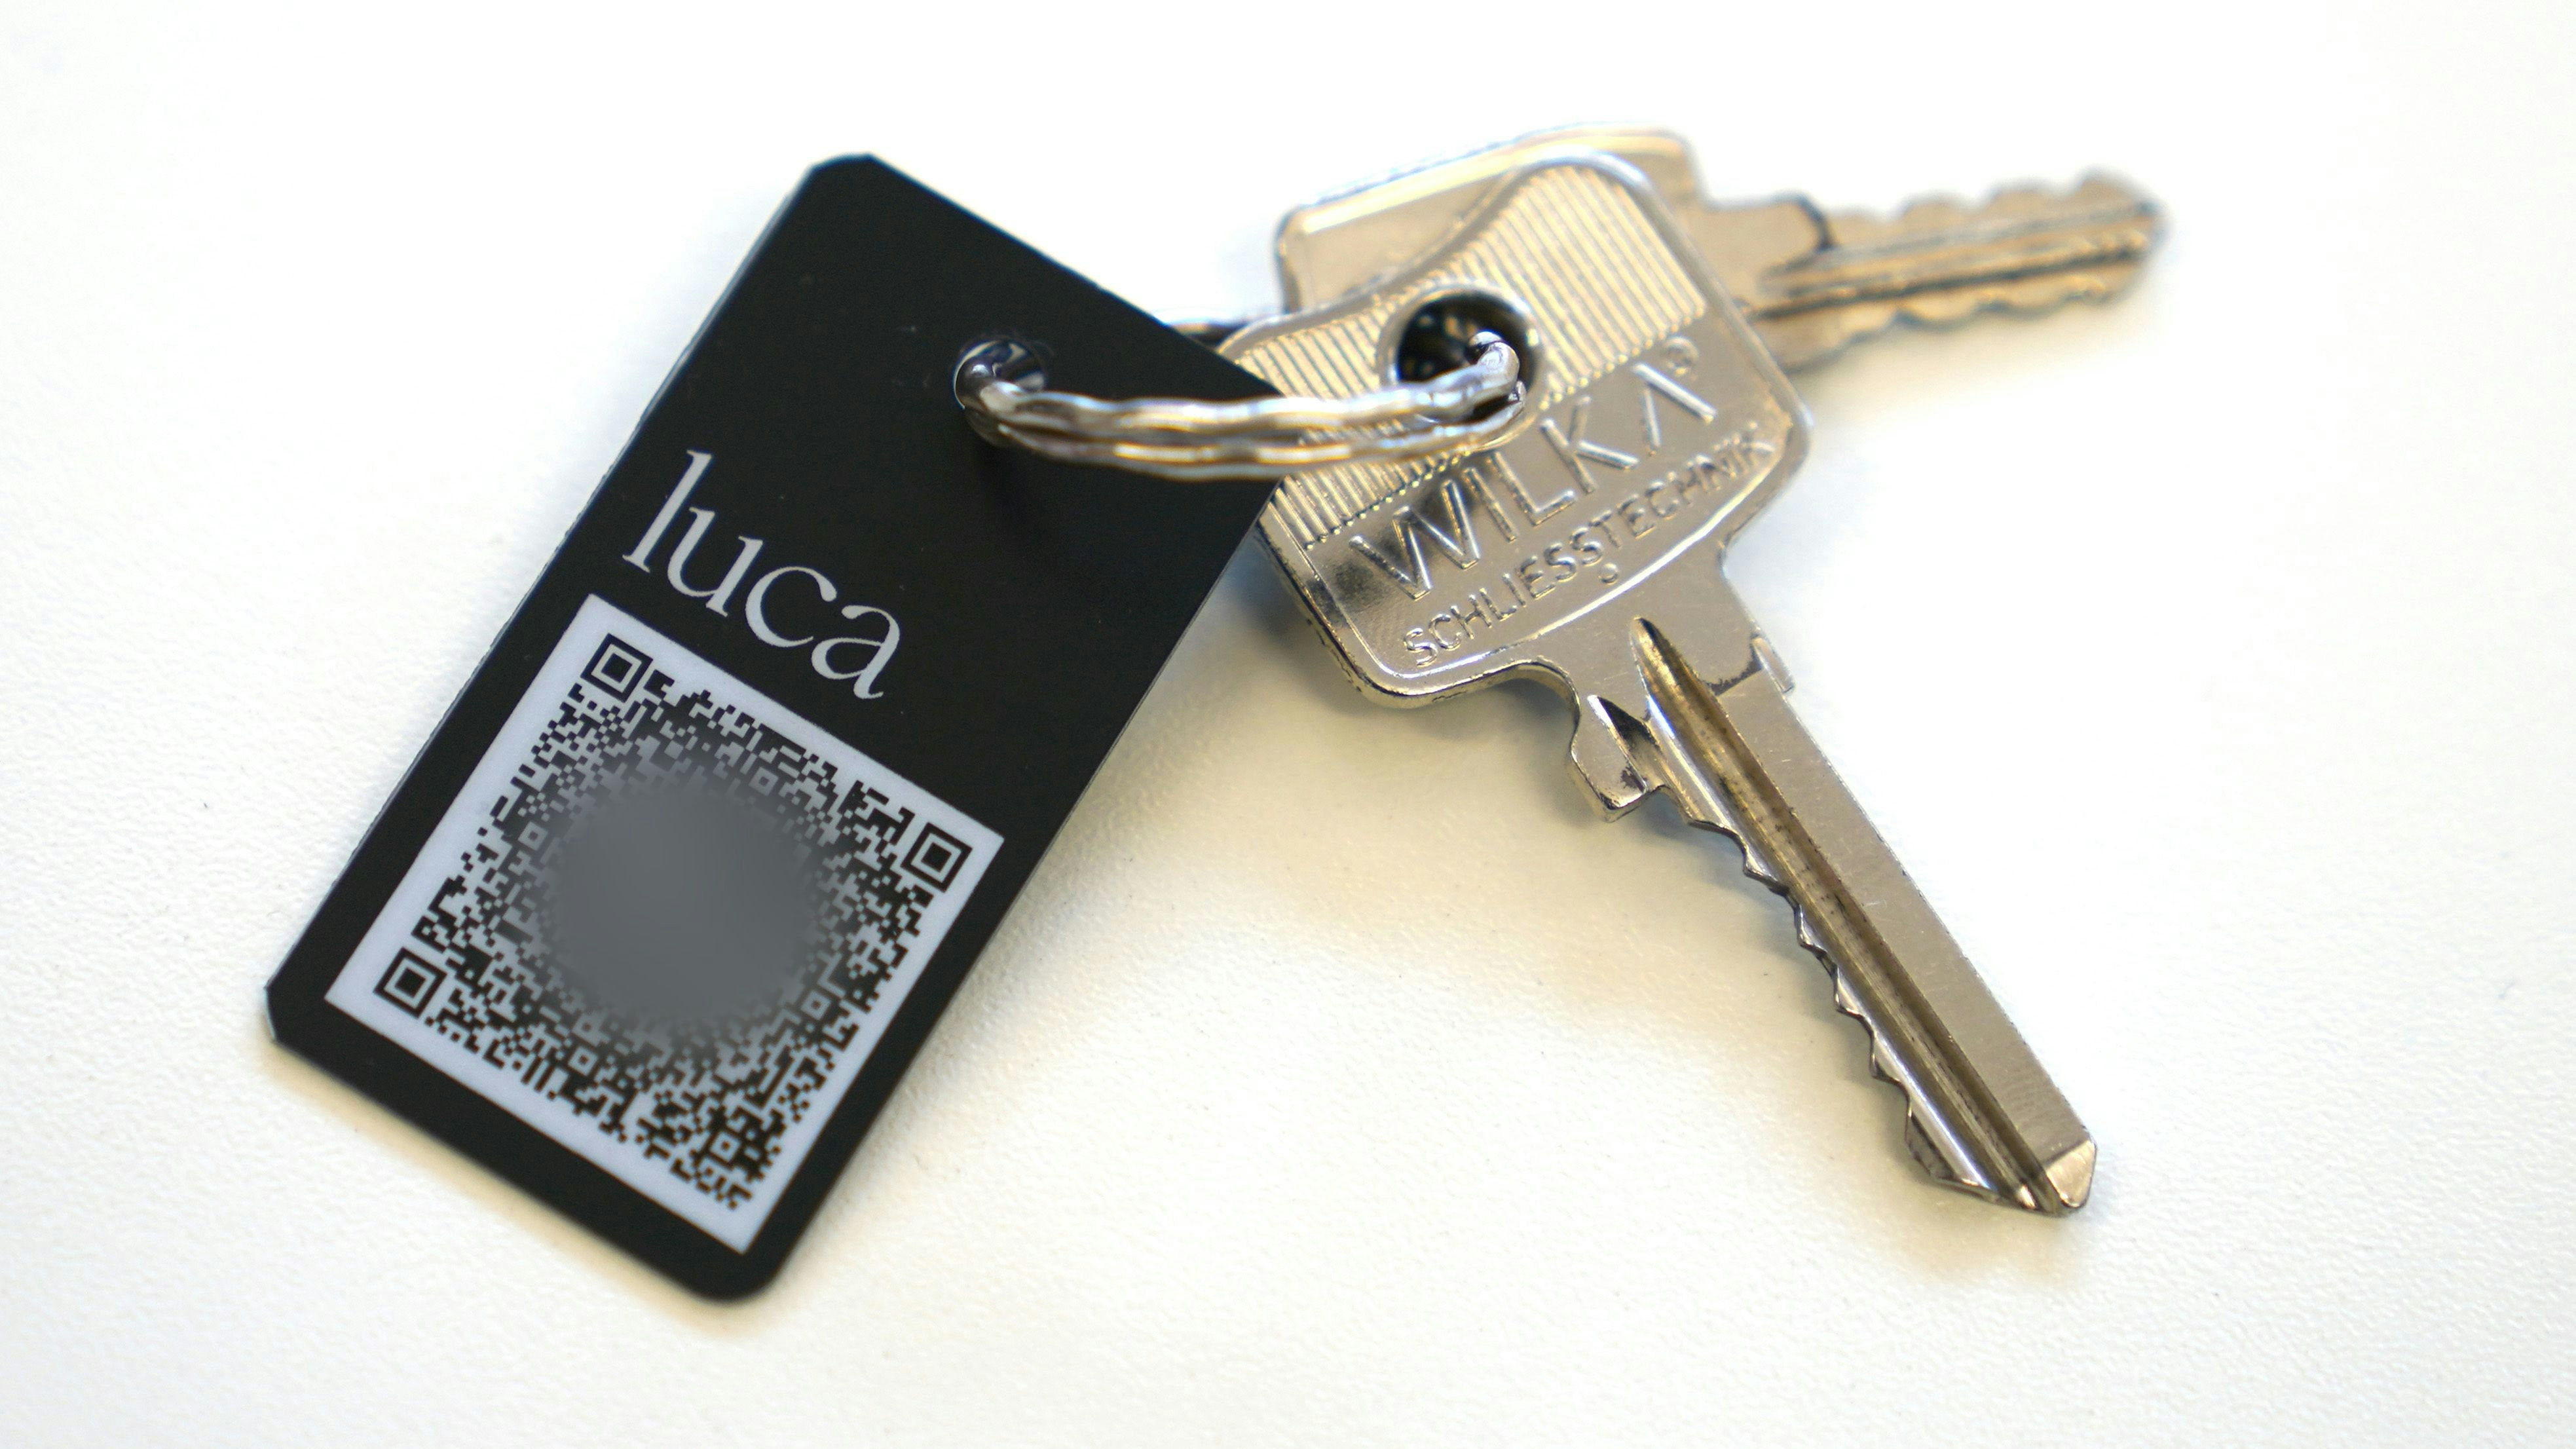 Ein Schlüsselanhänger mit QR-Code und der Aufschrift "luca" liegt auf einem Tisch. Aus Datenschutzgründen wurde der Code verpixelt. Foto: dpa